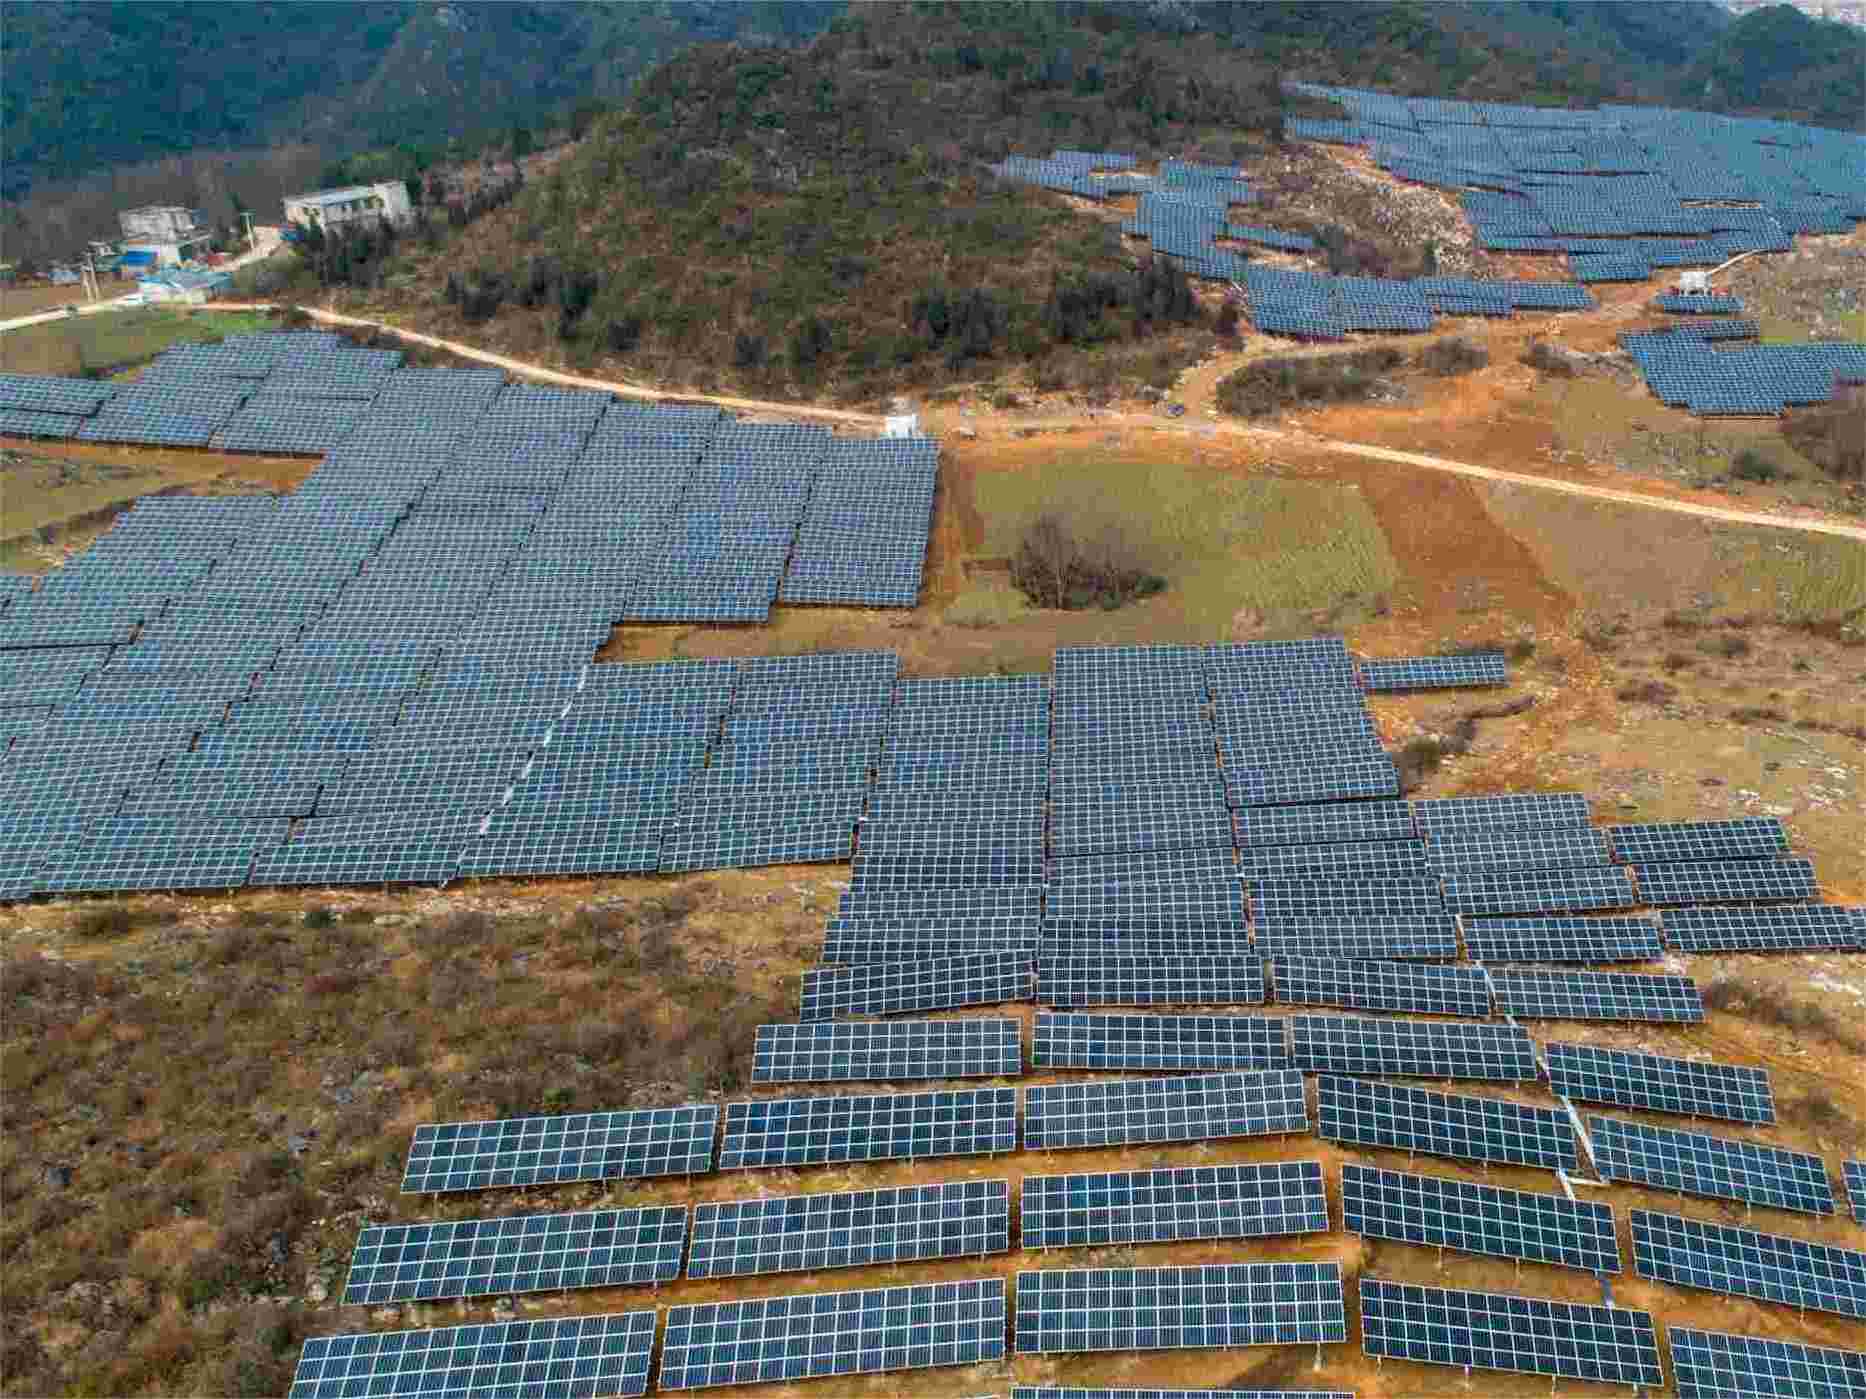 Projeto conectado à rede solar de 16 MW nas montanhas (Guizhou, China)